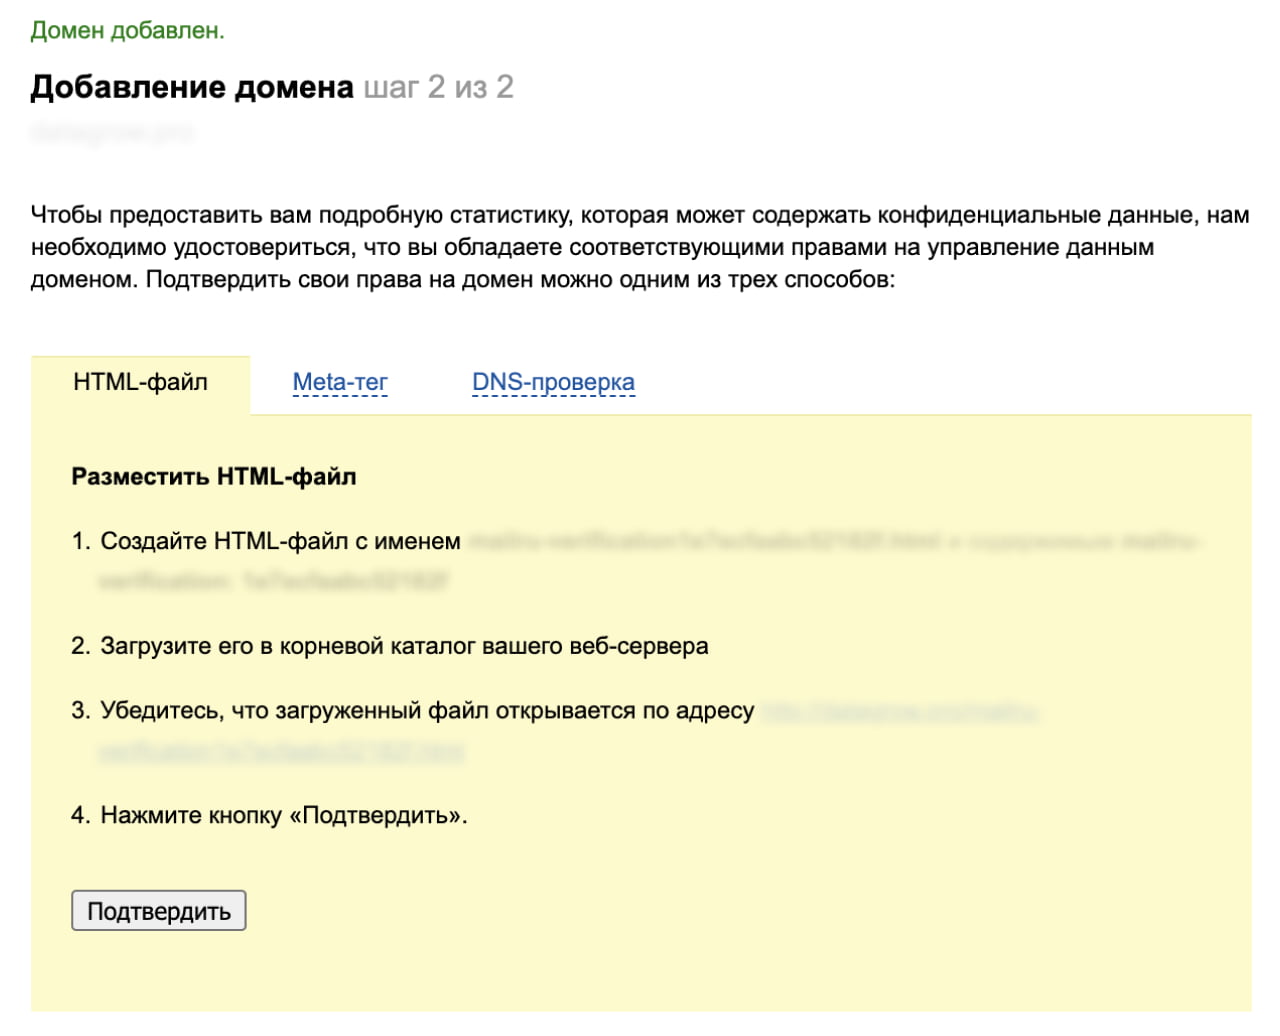 Страница подтверждения домена в постмастере Mail.ru